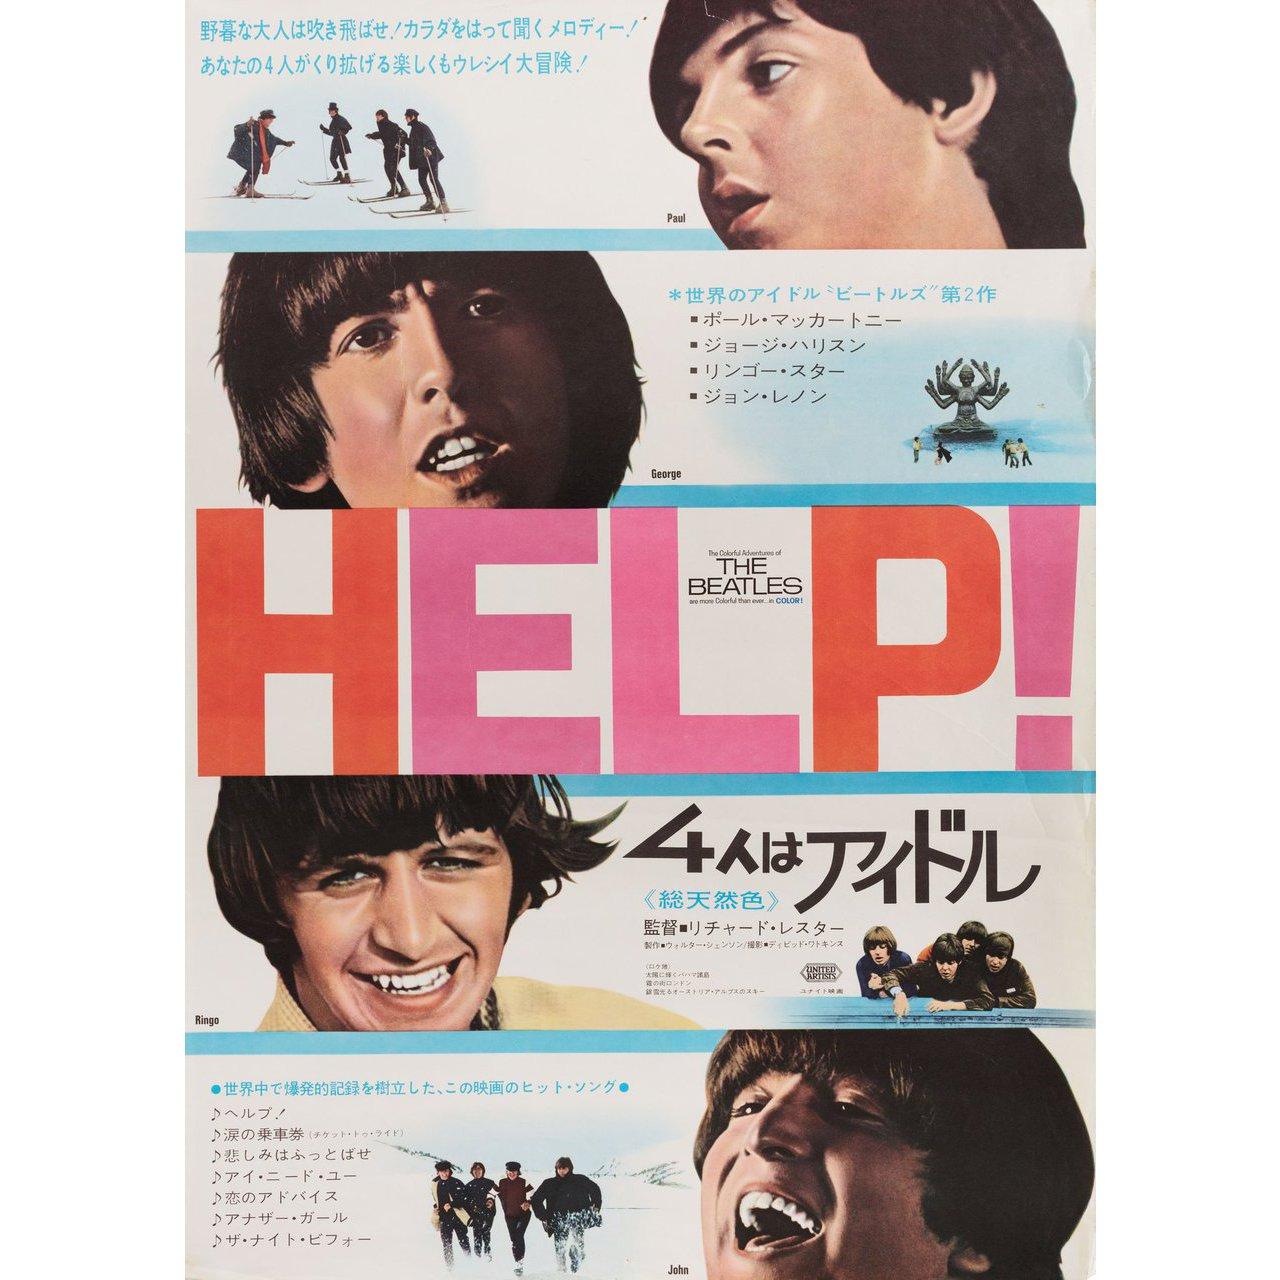 leo japan poster